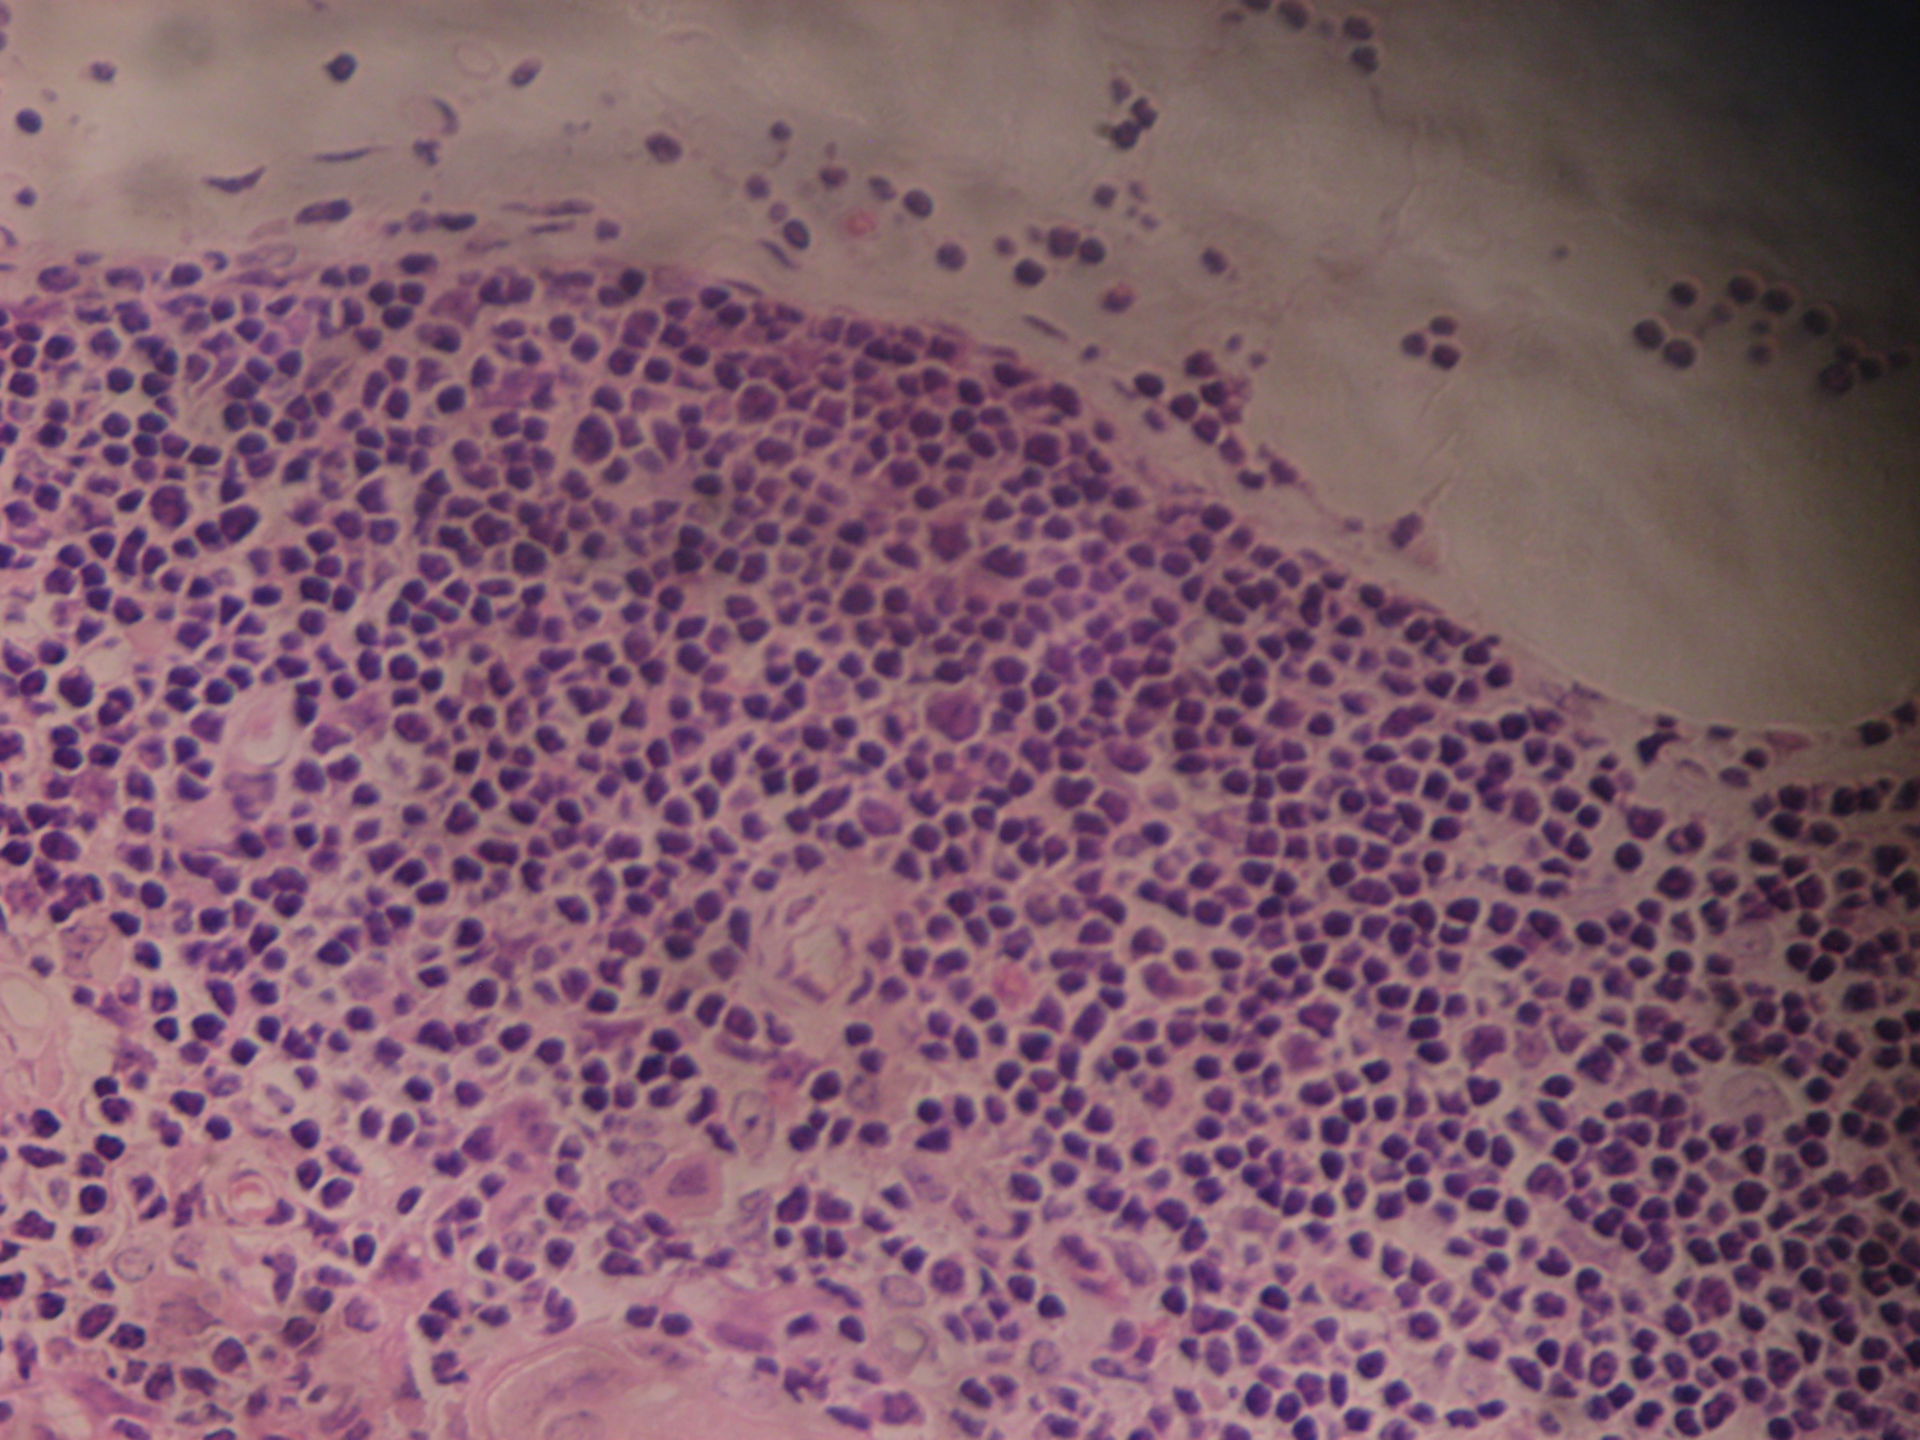 Thymus des Schafes 5 - Rindenausschnitt mit T- Zellen und Thymusepithelzellen